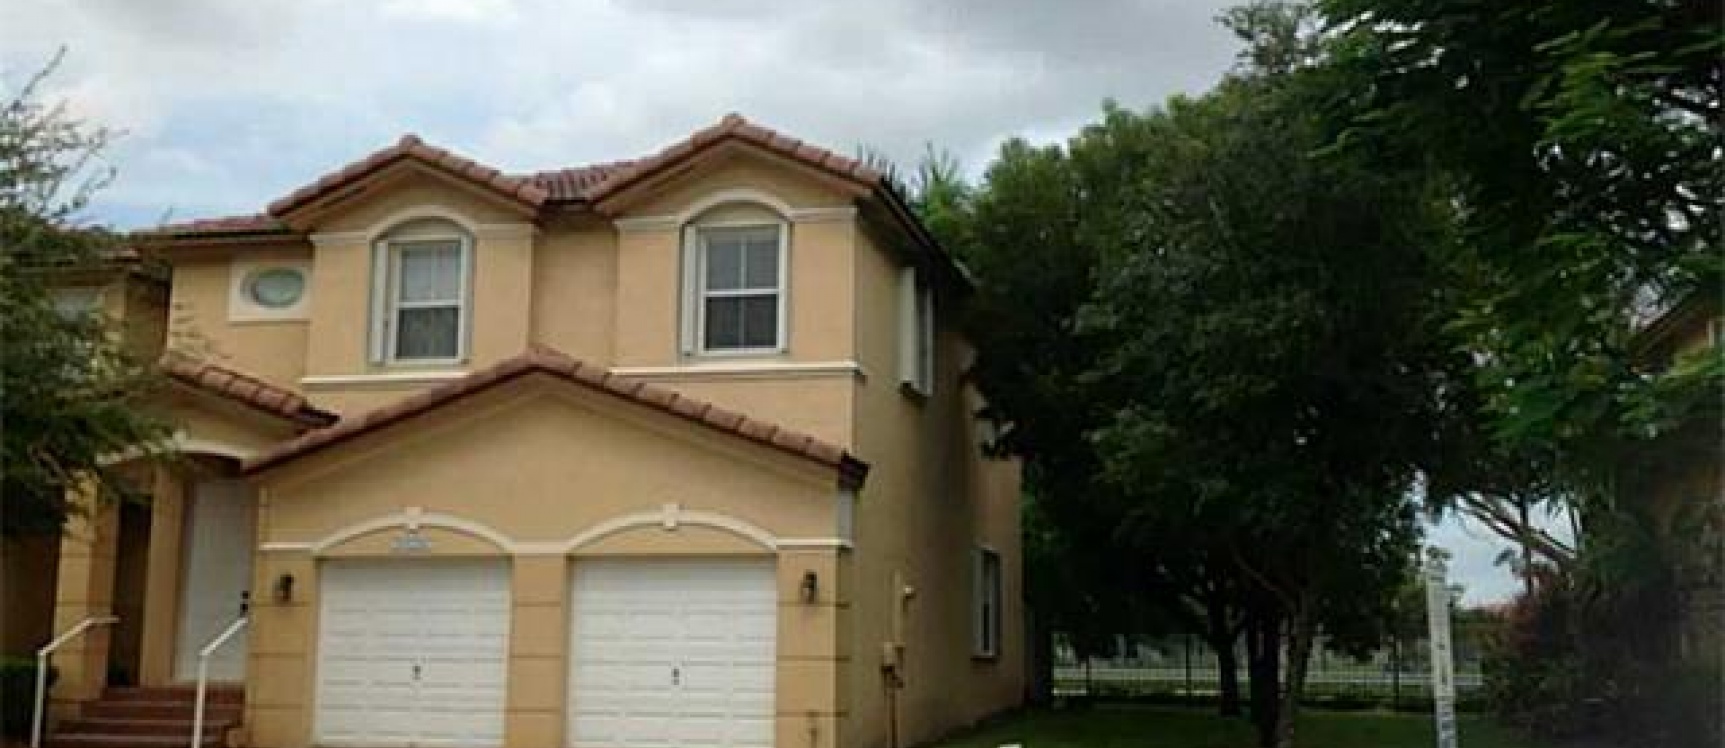 GeoBienes - Venta en Miami: Townhouse Doral- Florida - Plusvalia Guayaquil Casas de venta y alquiler Inmobiliaria Ecuador